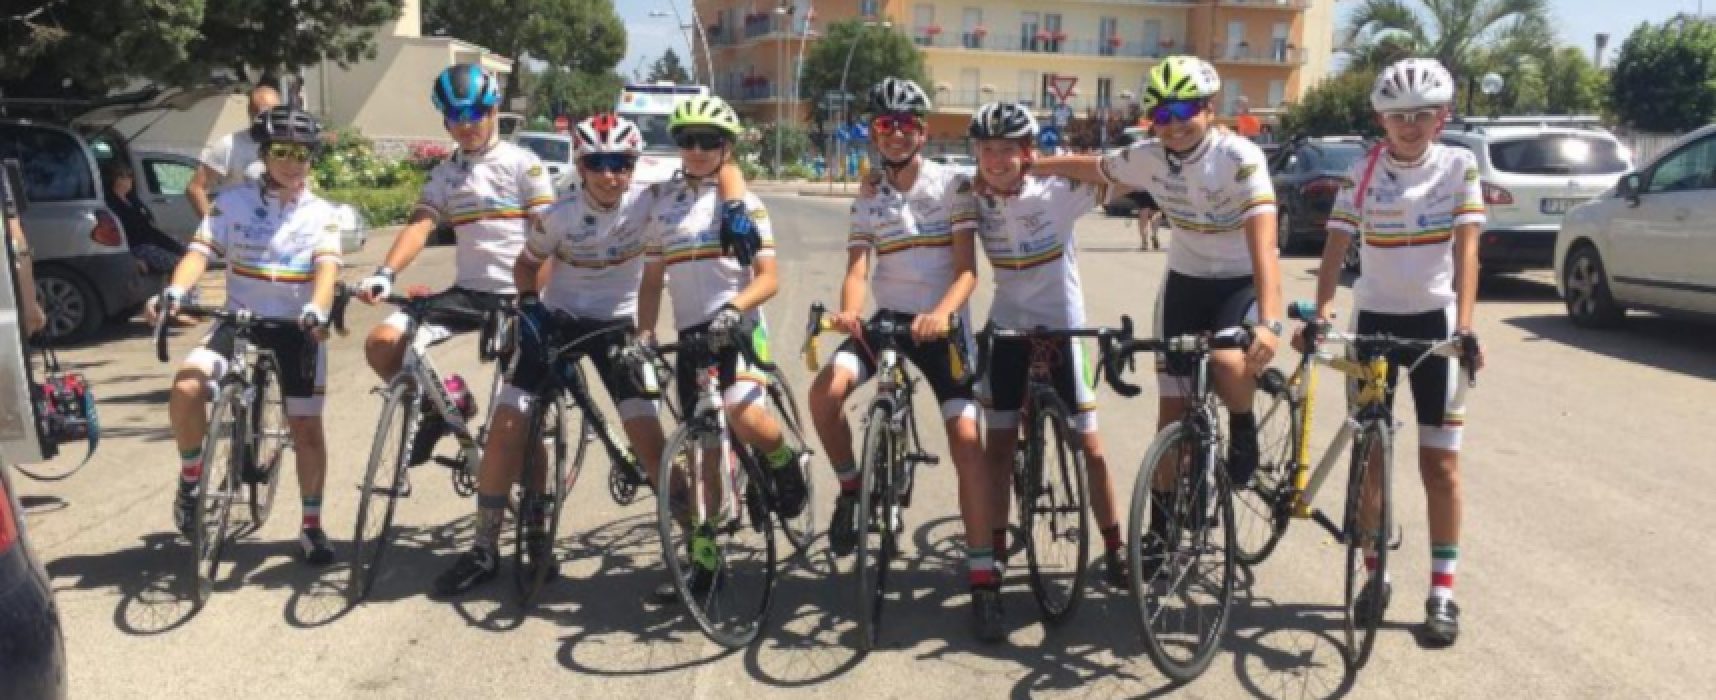 Polisportiva Cavallaro: ottimi risultati nelle gare di ciclismo e paraciclismo del weekend